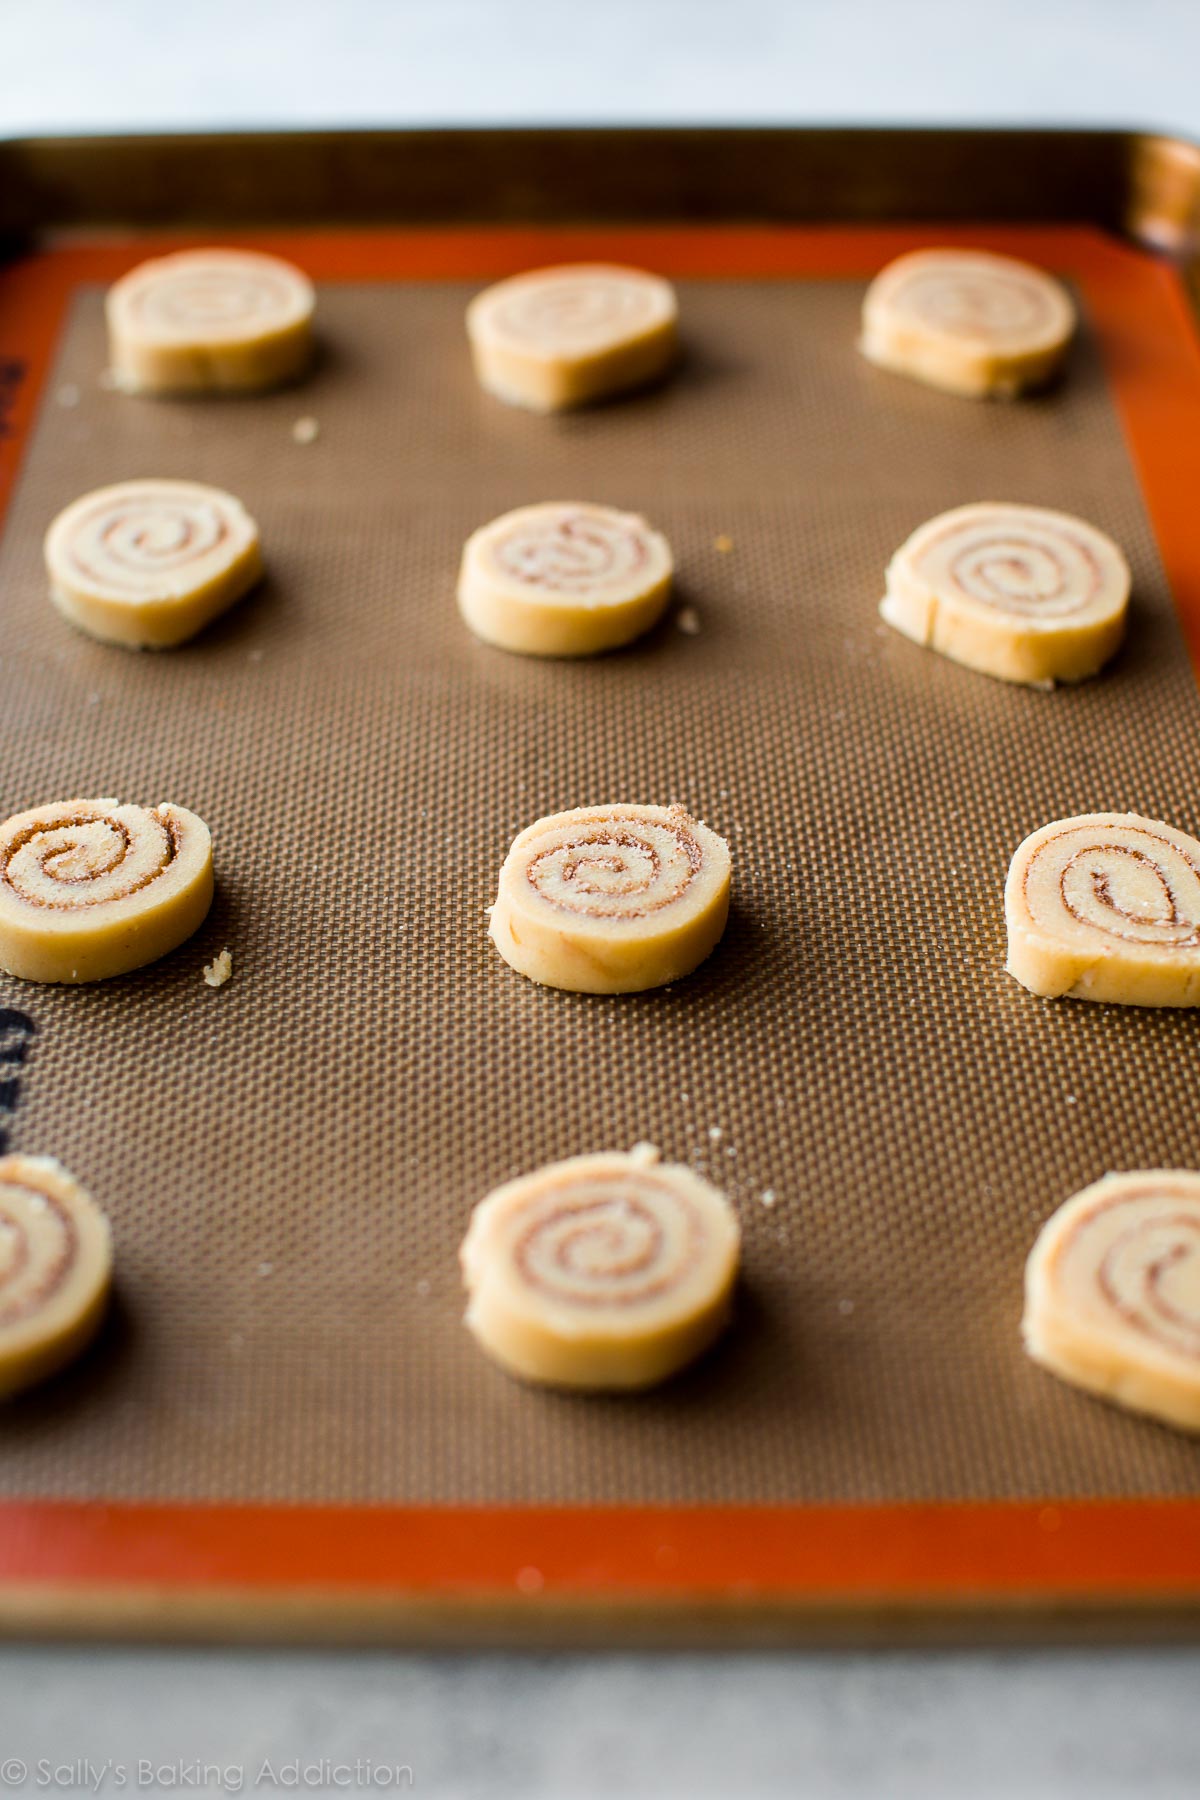 Petits biscuits à la cannelle fabriqués à partir de pâte à biscuits au sucre! Recette facile sur sallysbakingaddiction.com